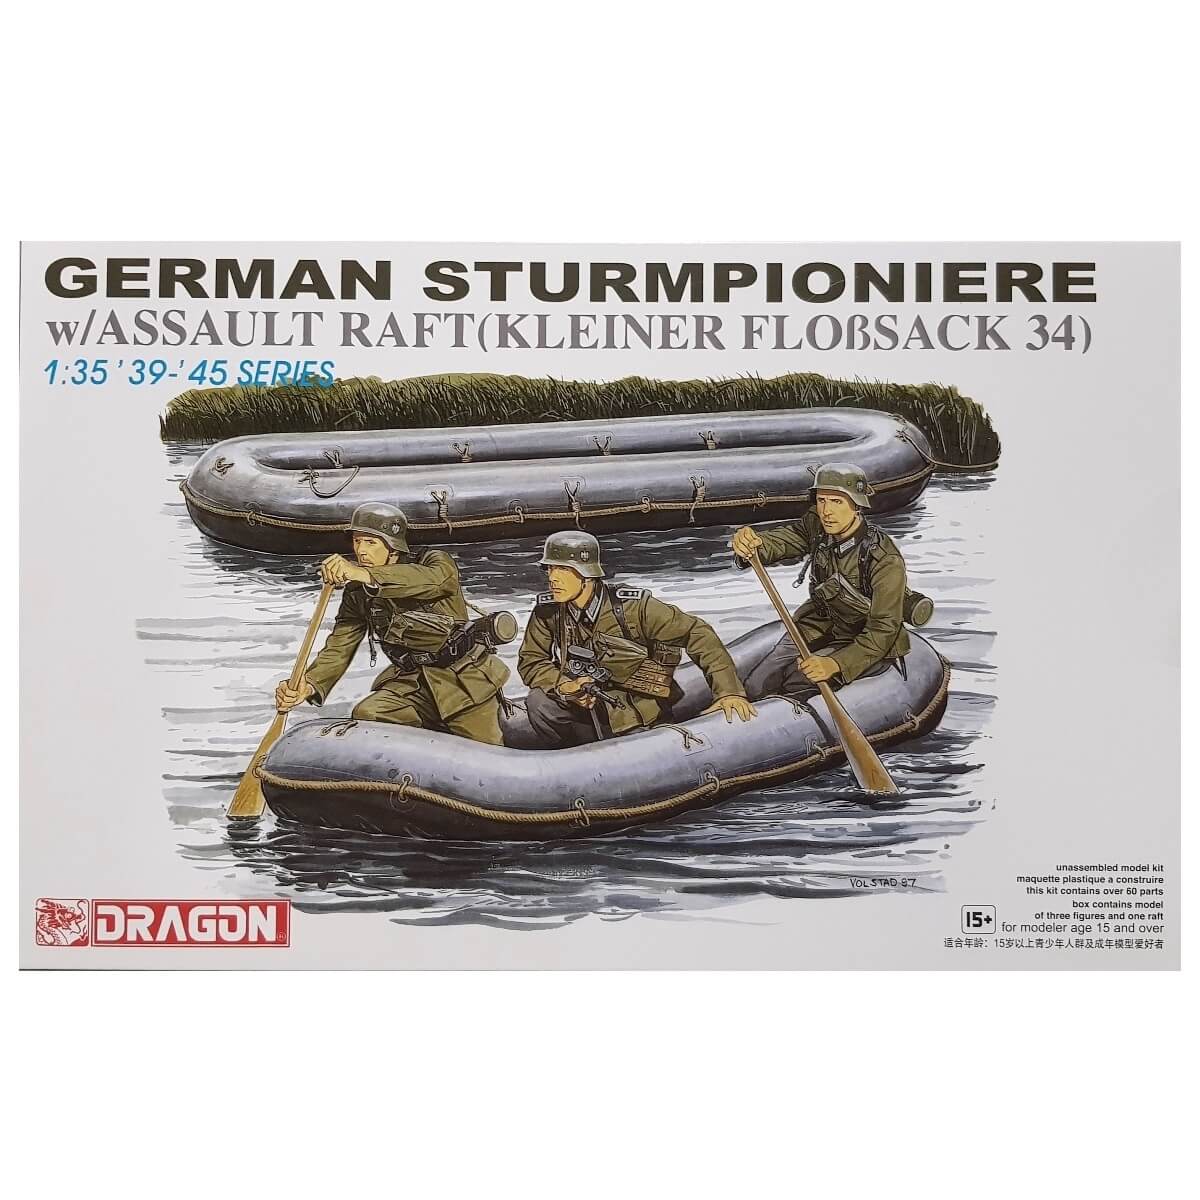 1:35 German Sturmpioniere with Assault Raft - Kleiner Floßsack 34 - DRAGON